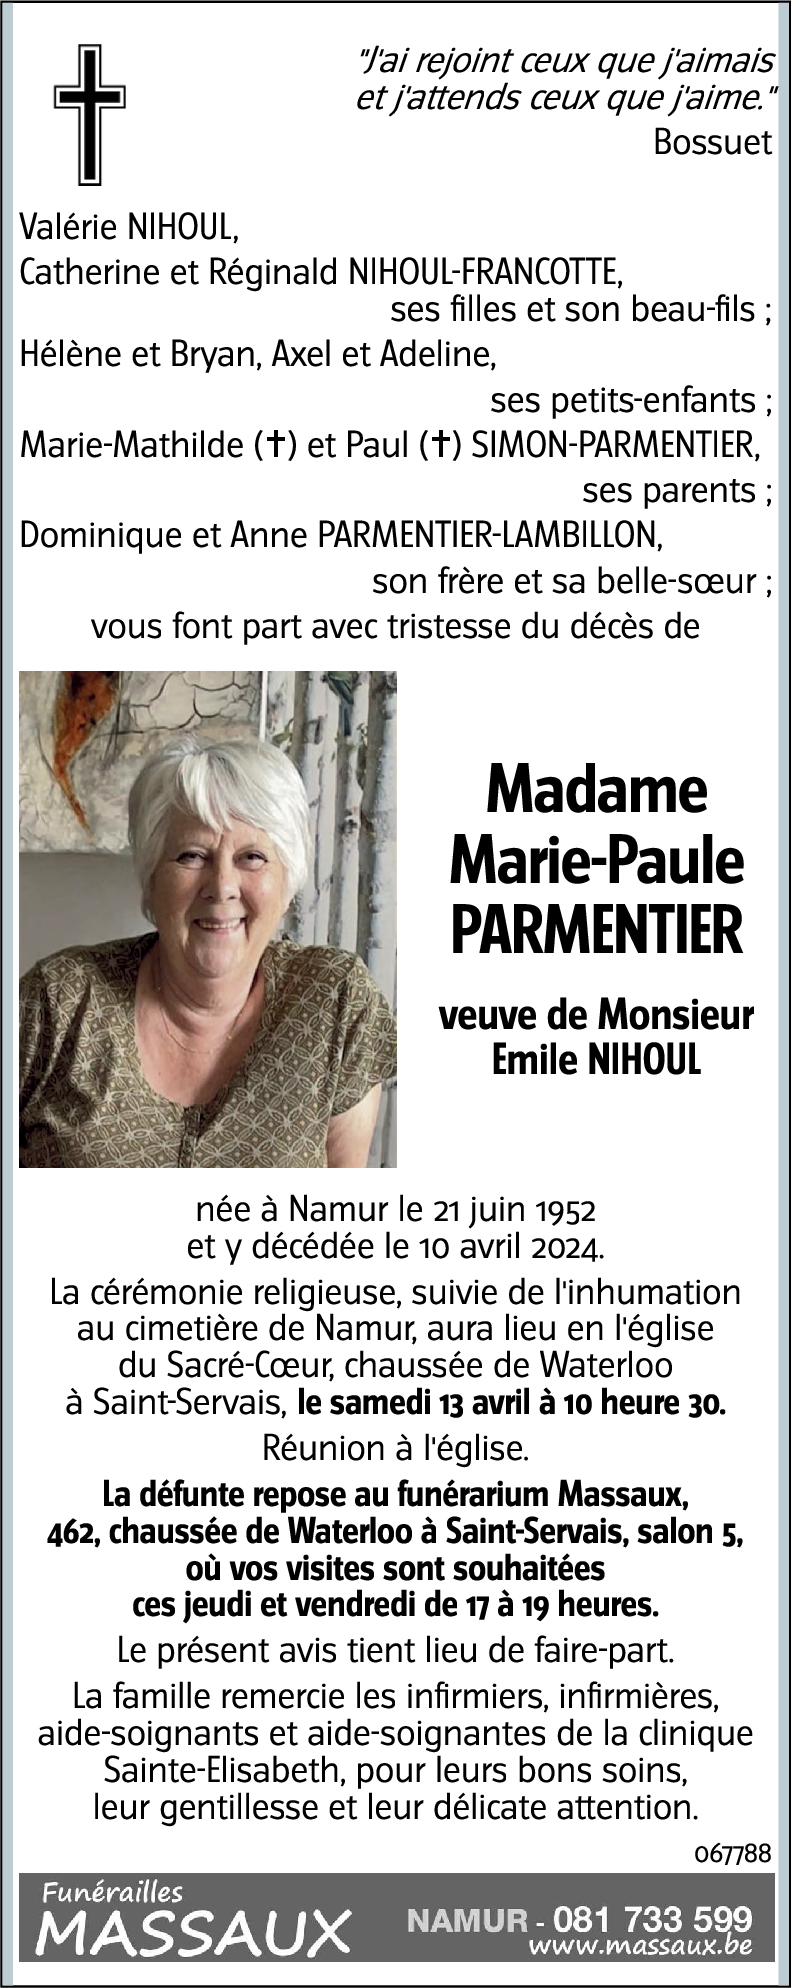 Marie-Paule PARMENTIER